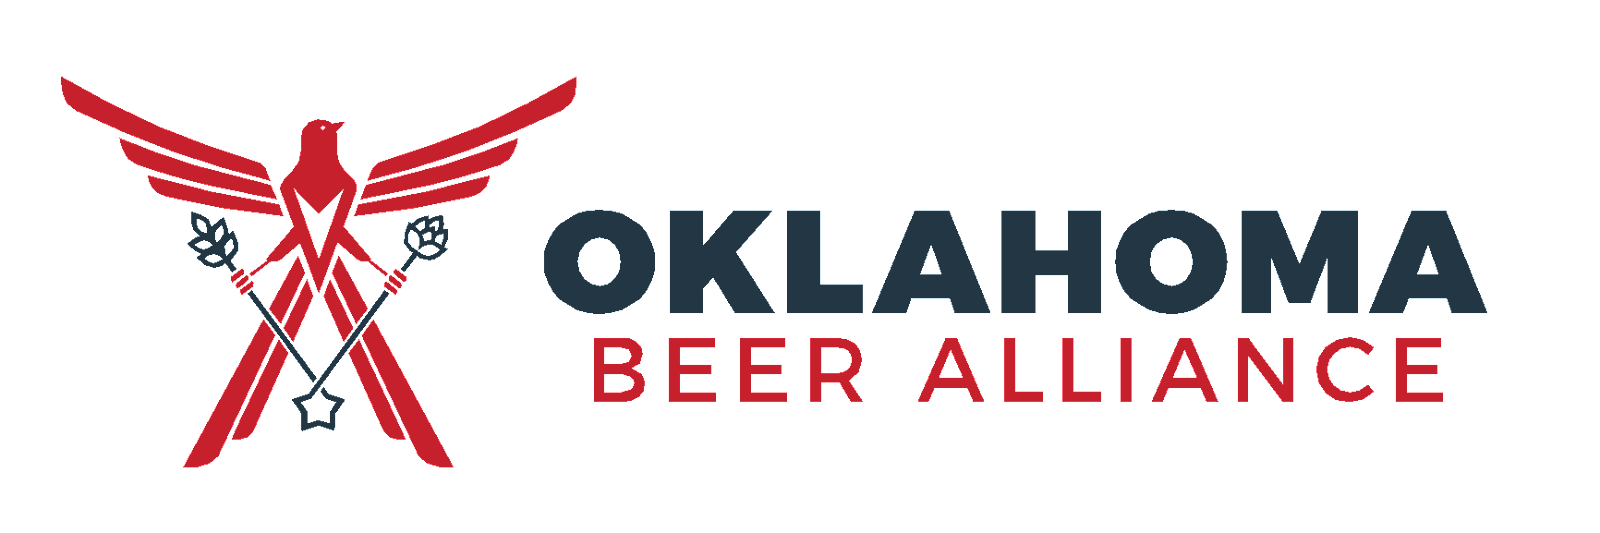 Oklahoma Beer Alliance